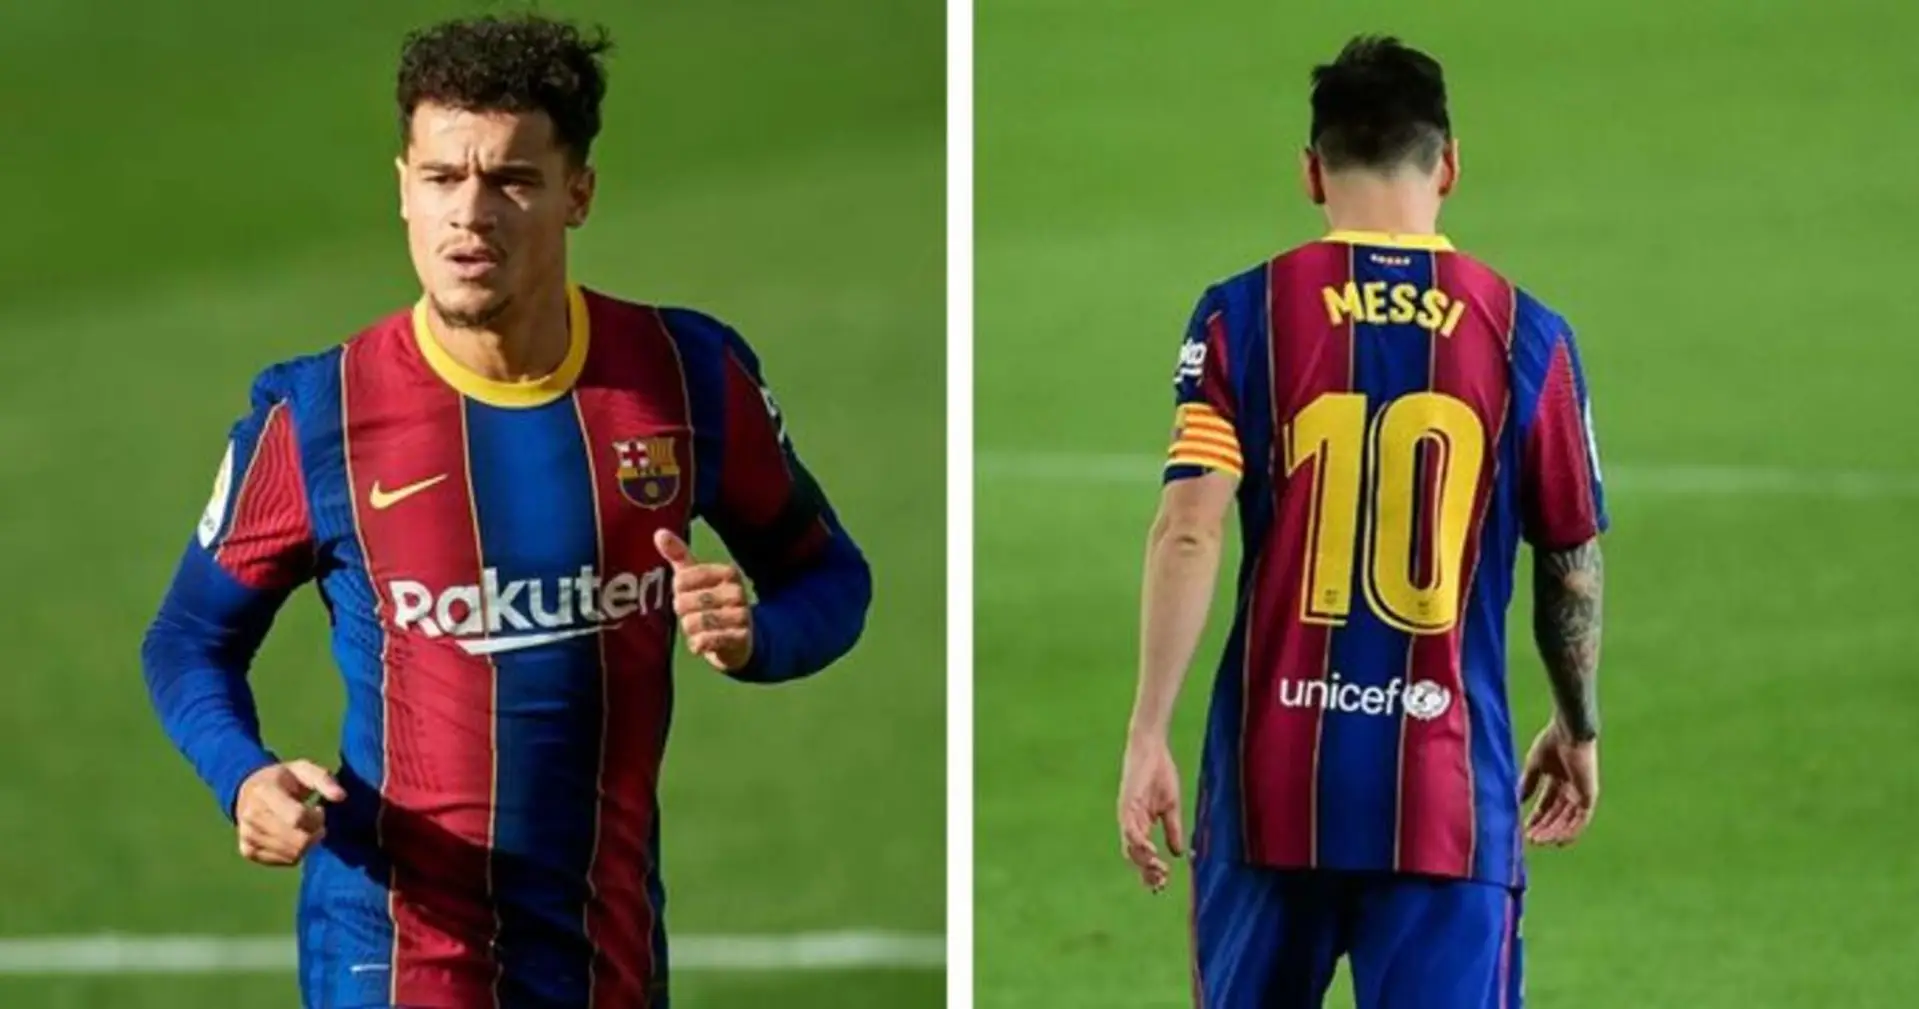 El Barça ofrece el dorsal 10 de Messi a Coutinho, el brasileño piensa en tomarlo